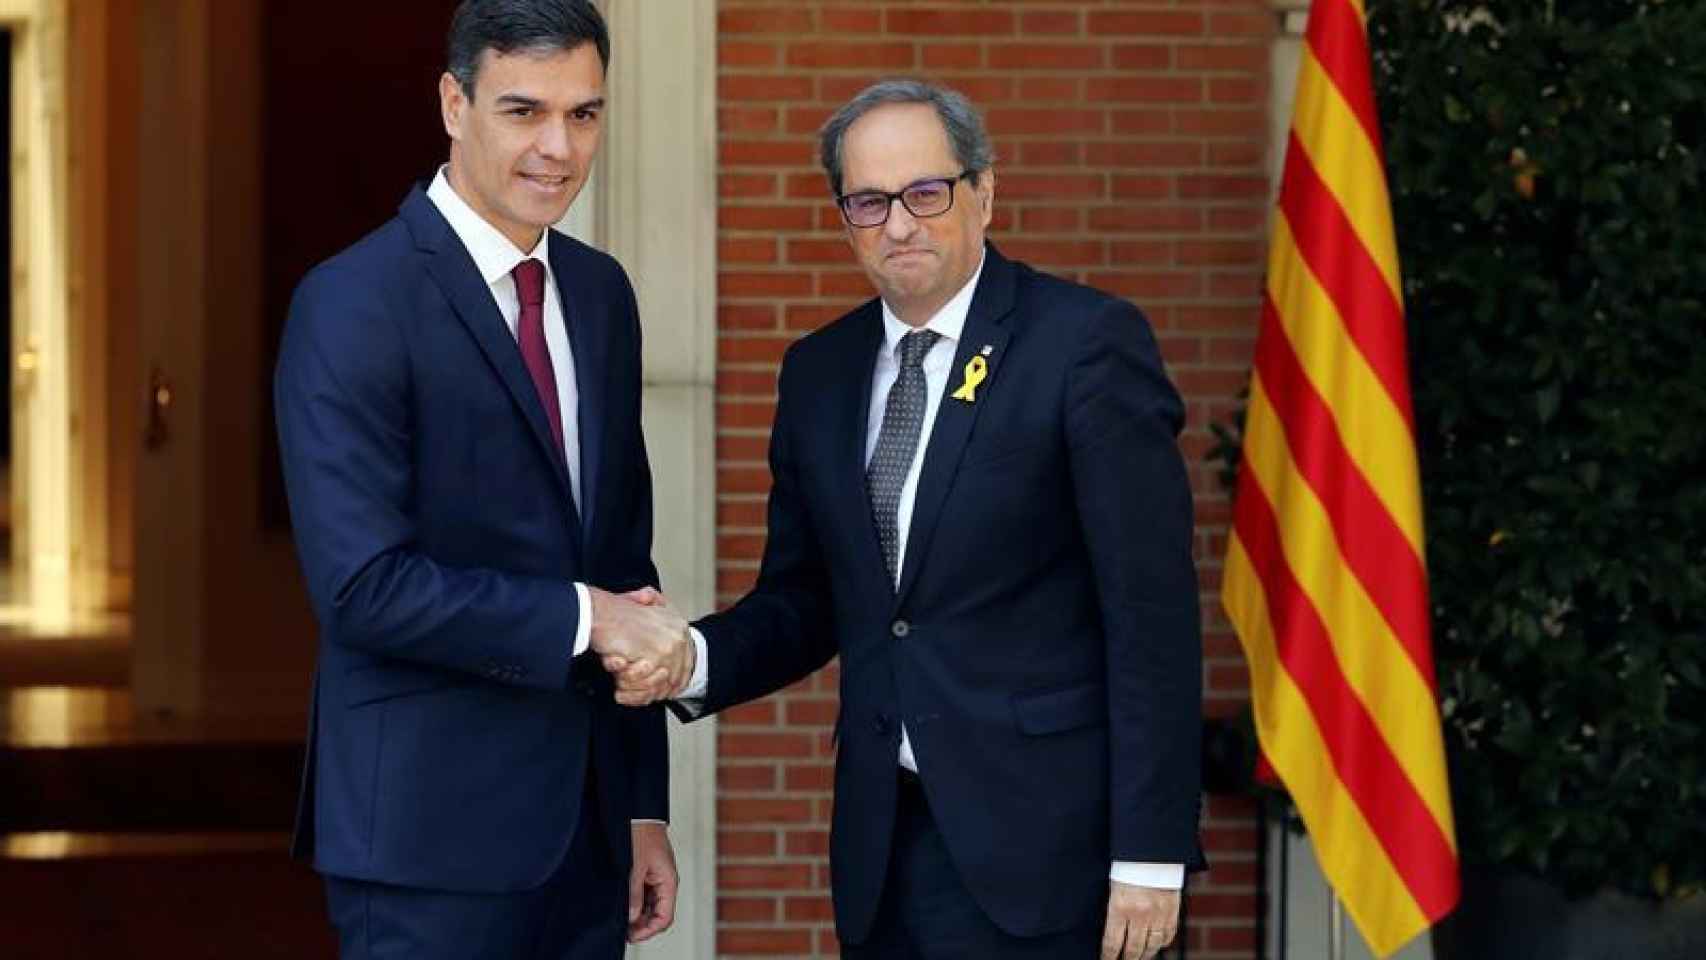 El presidente del gobierno Pedro Sánchez y el president de la Generalitat Quim Torra, se saludan antes de la reunión que ambos mantienen en el Palacio de La Moncloa / EFE